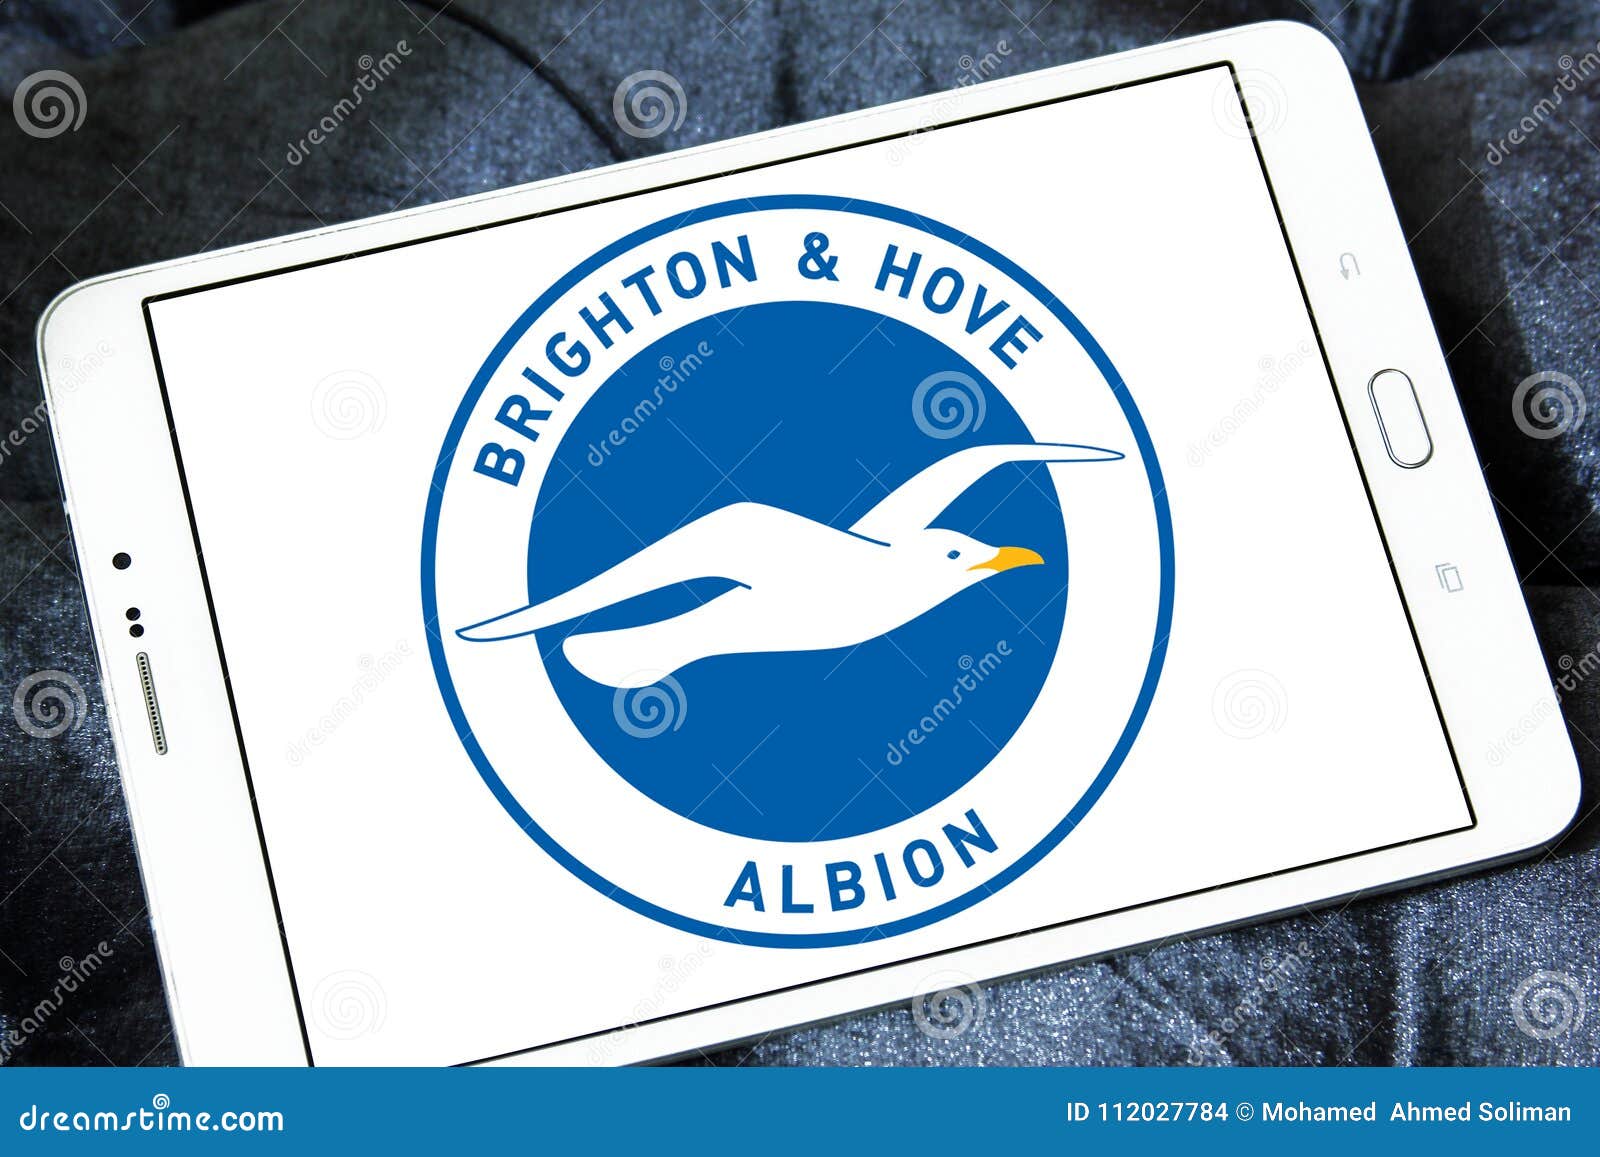 Brighton Hove Albion Fc Logo